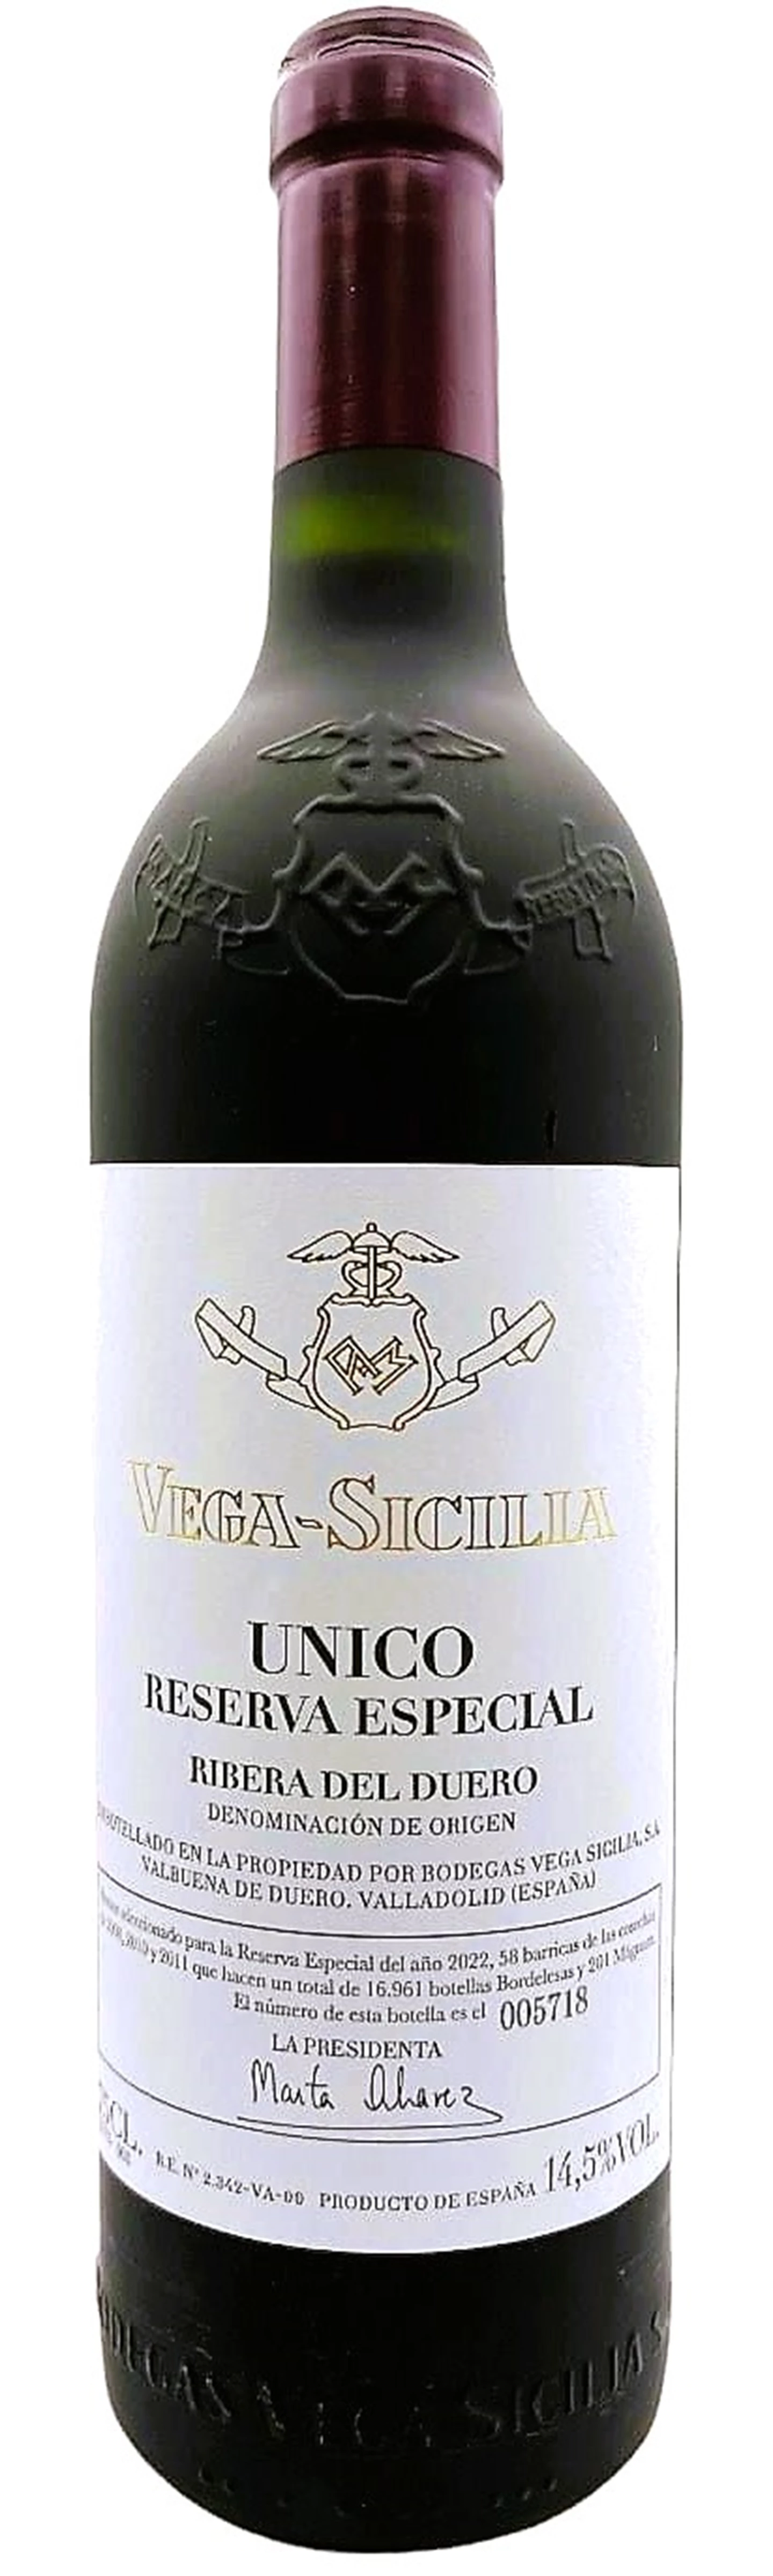 Vega-Sicilia_Reserva-Especial-2022-edition